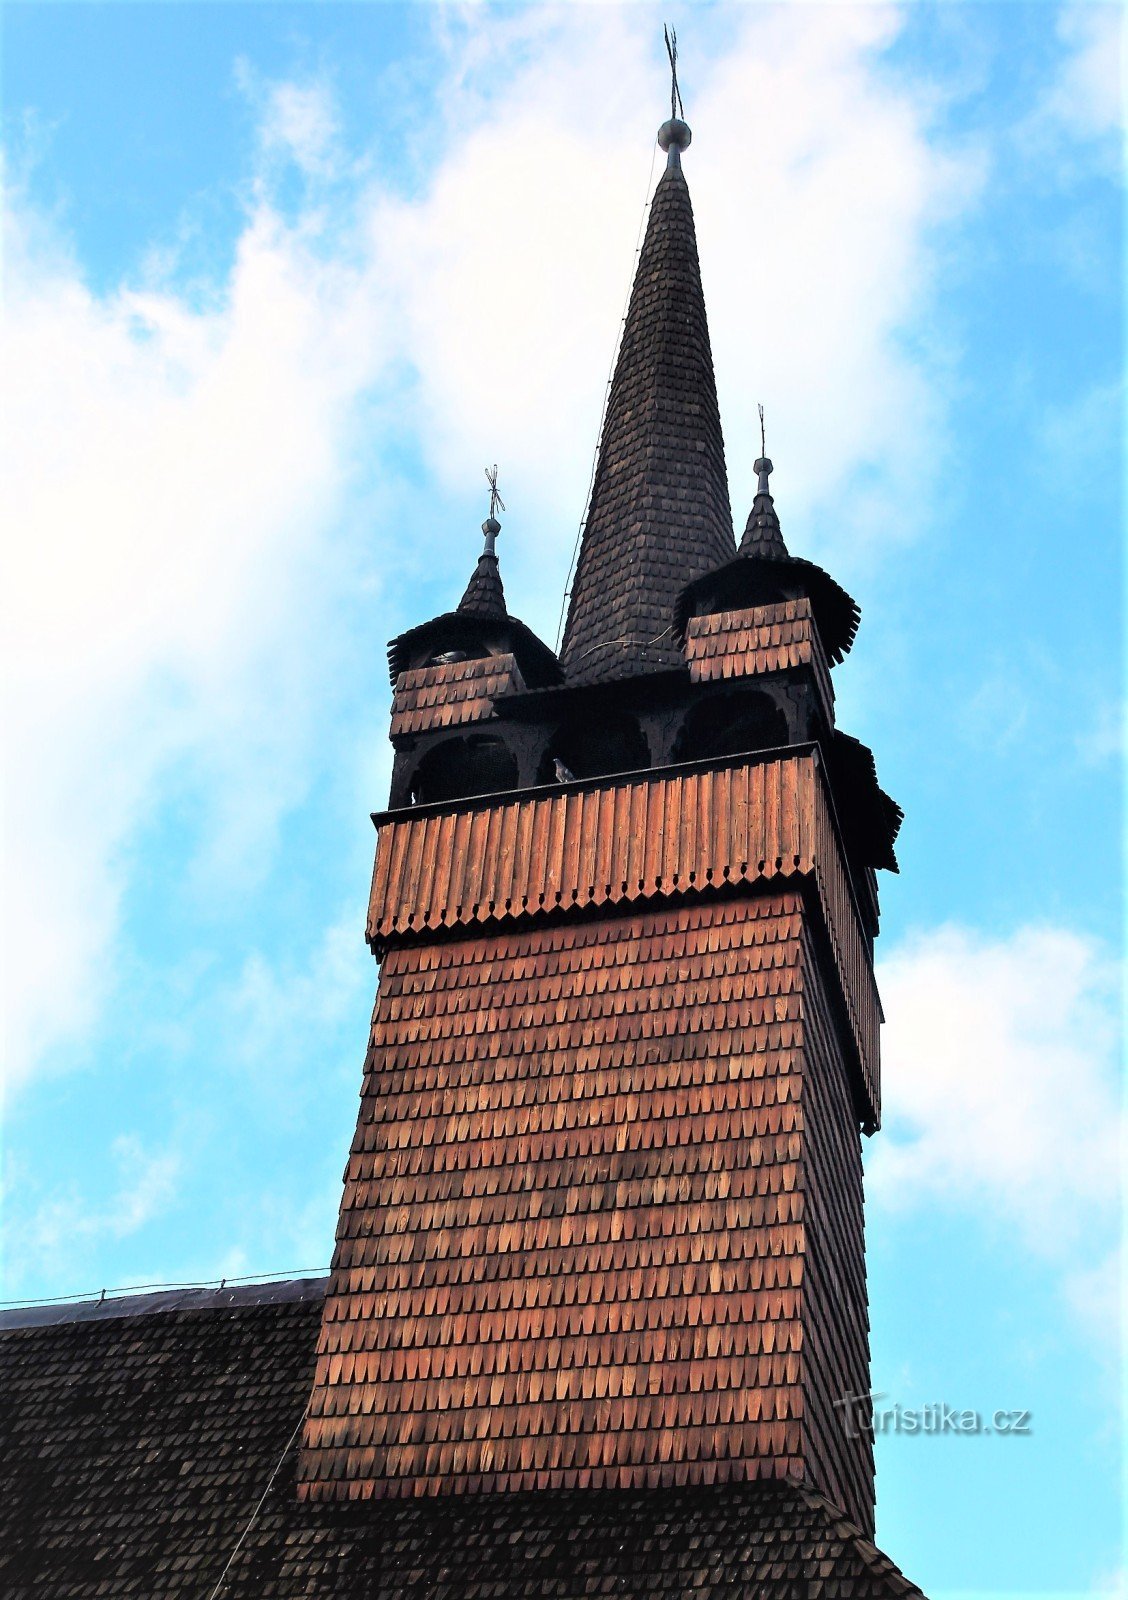 Ein vierseitiger Kirchturm mit einem konischen Dach mit vier Ecktürmchen